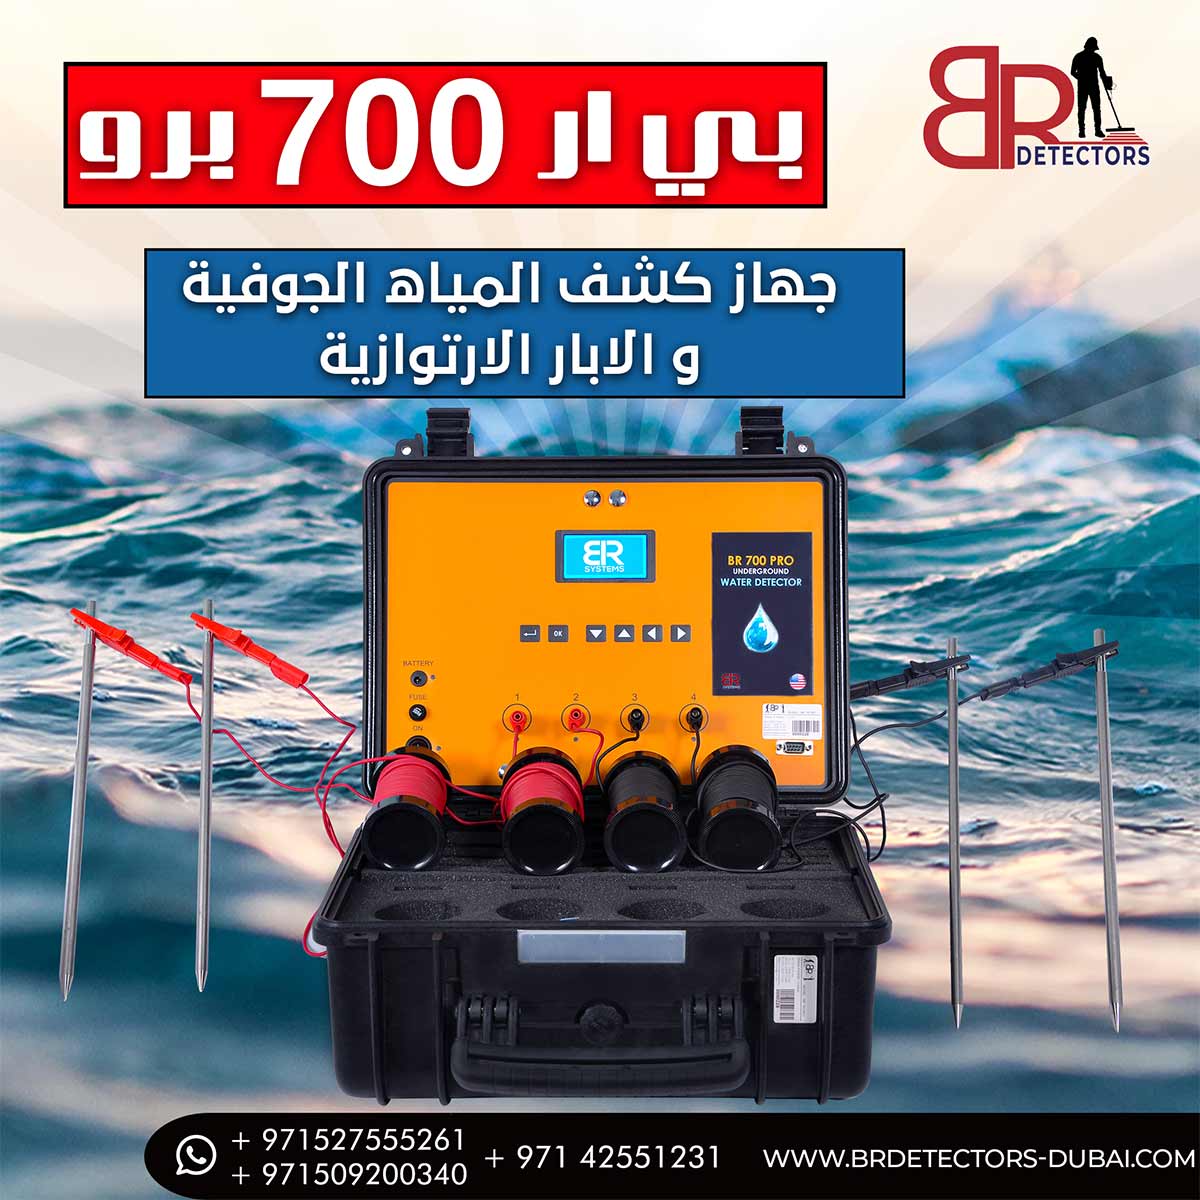 اجهزة التنقيب عن المياه في الامارات - بي ار 700 برو